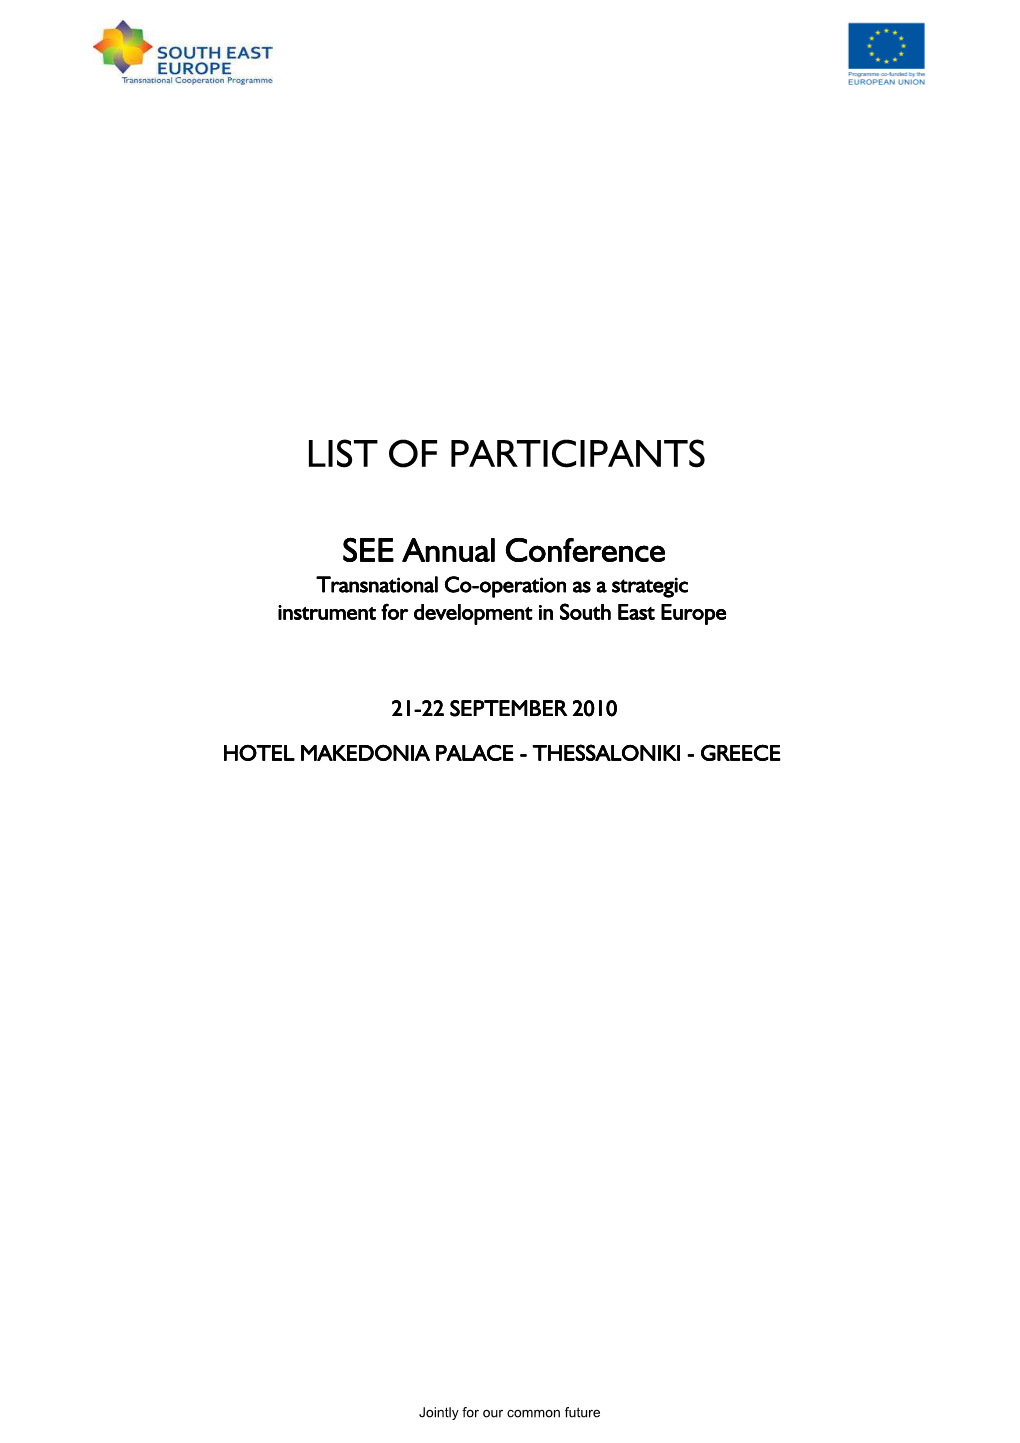 List of Participants FINAL